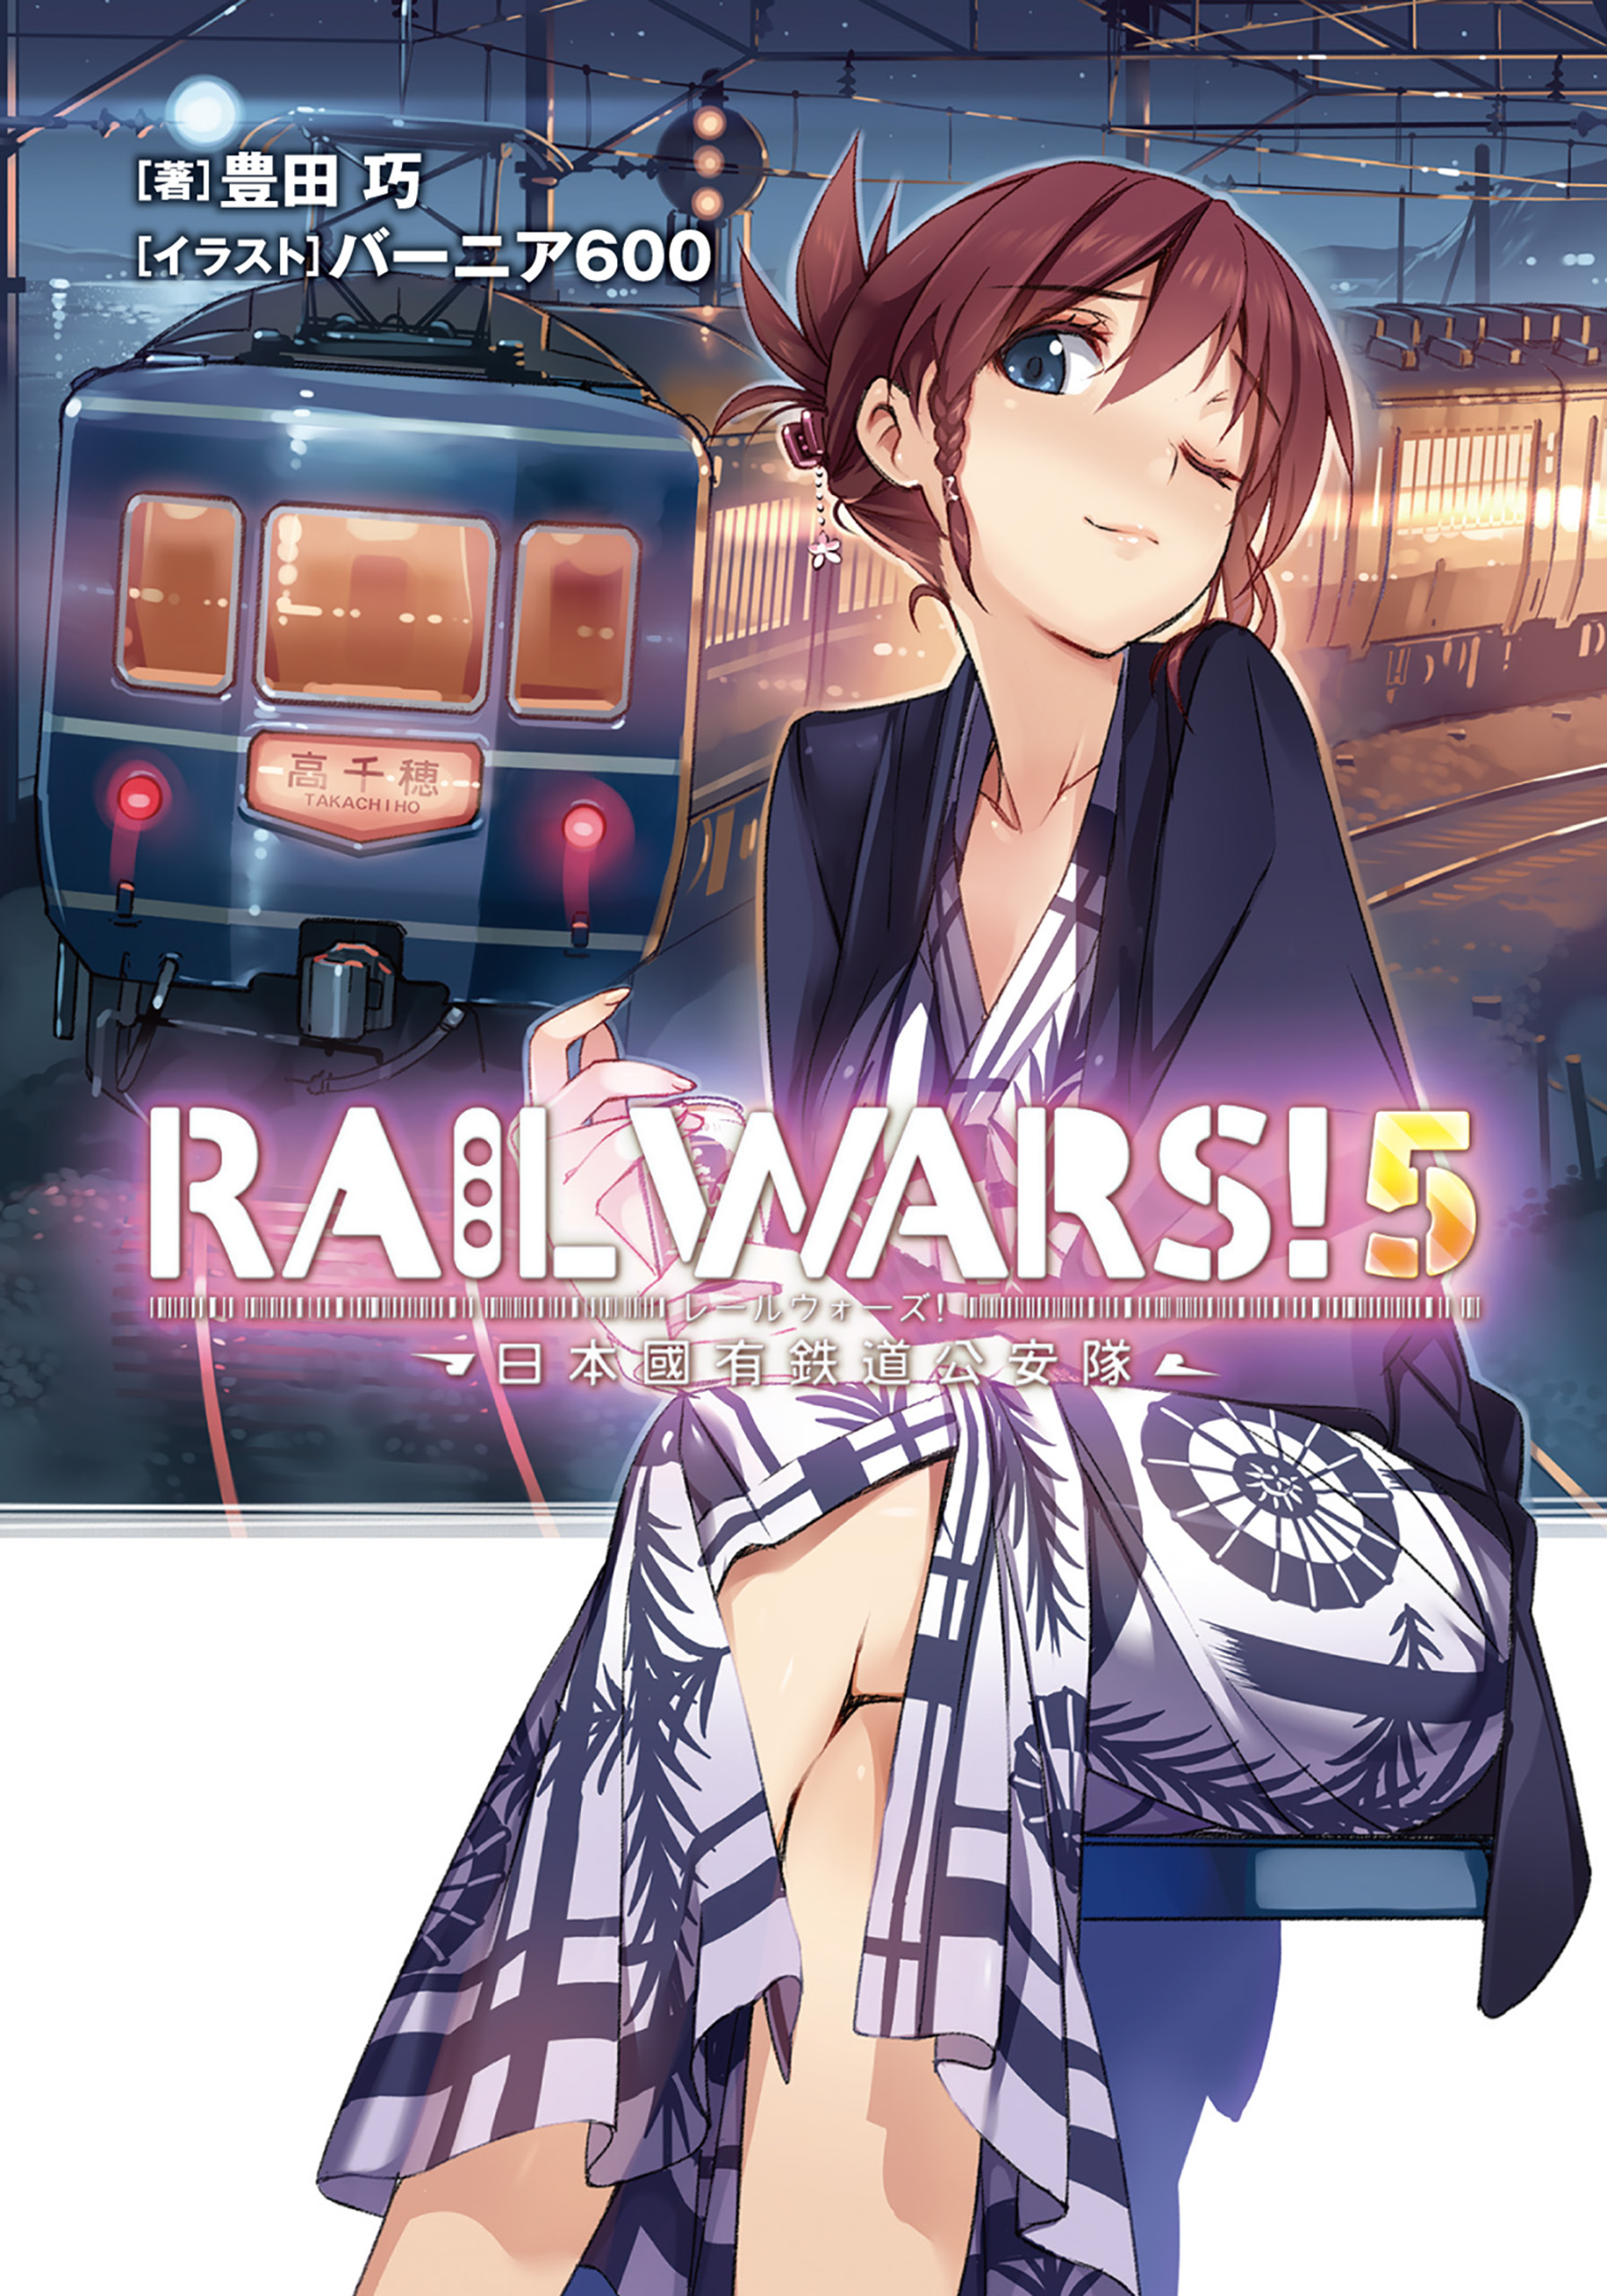 Rail Wars! (Literature) - TV Tropes